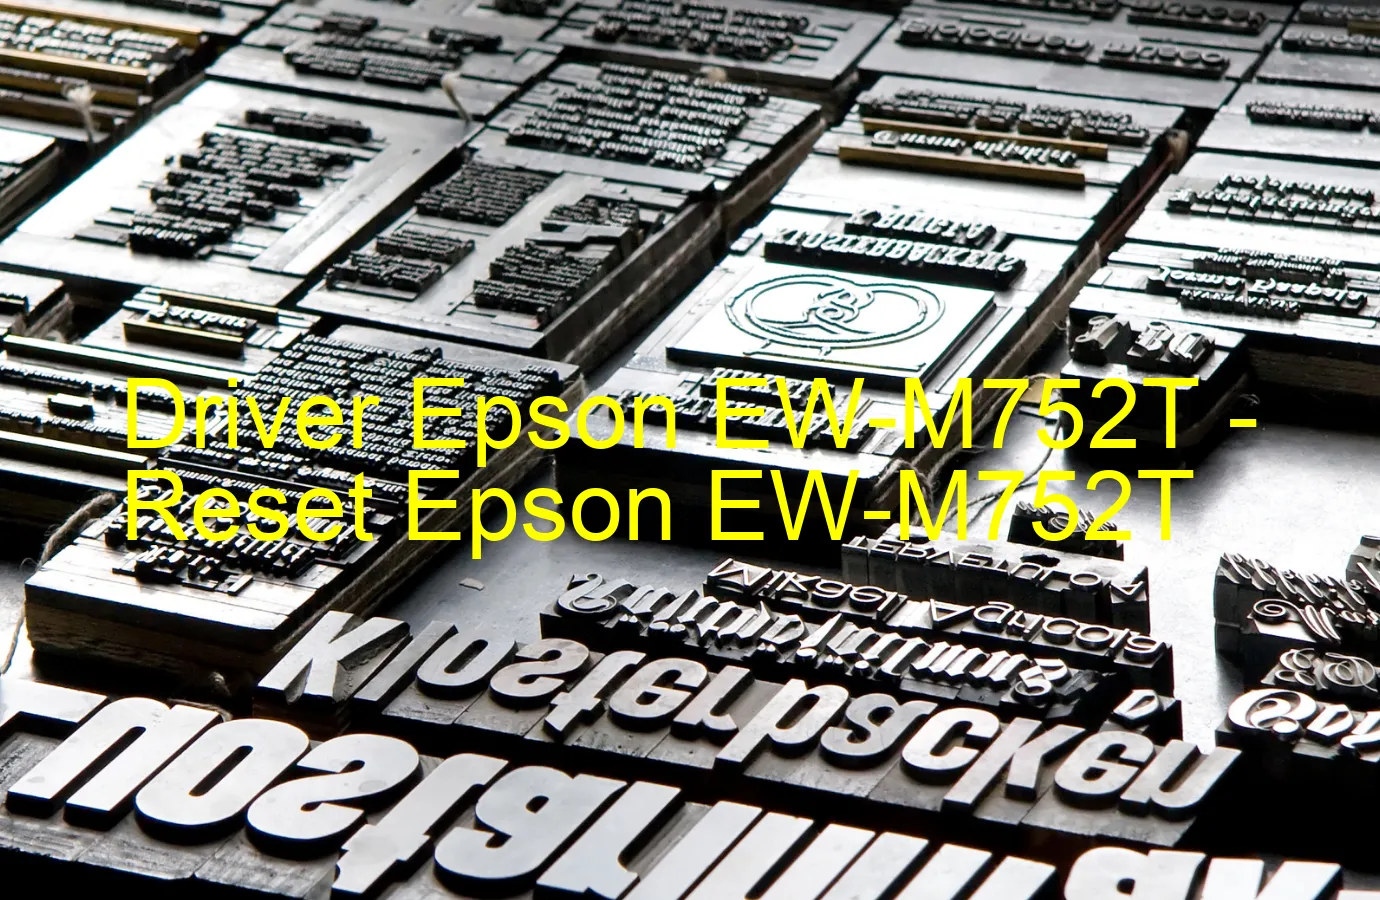 Epson EW-M752Tのドライバー、Epson EW-M752Tのリセットソフトウェア